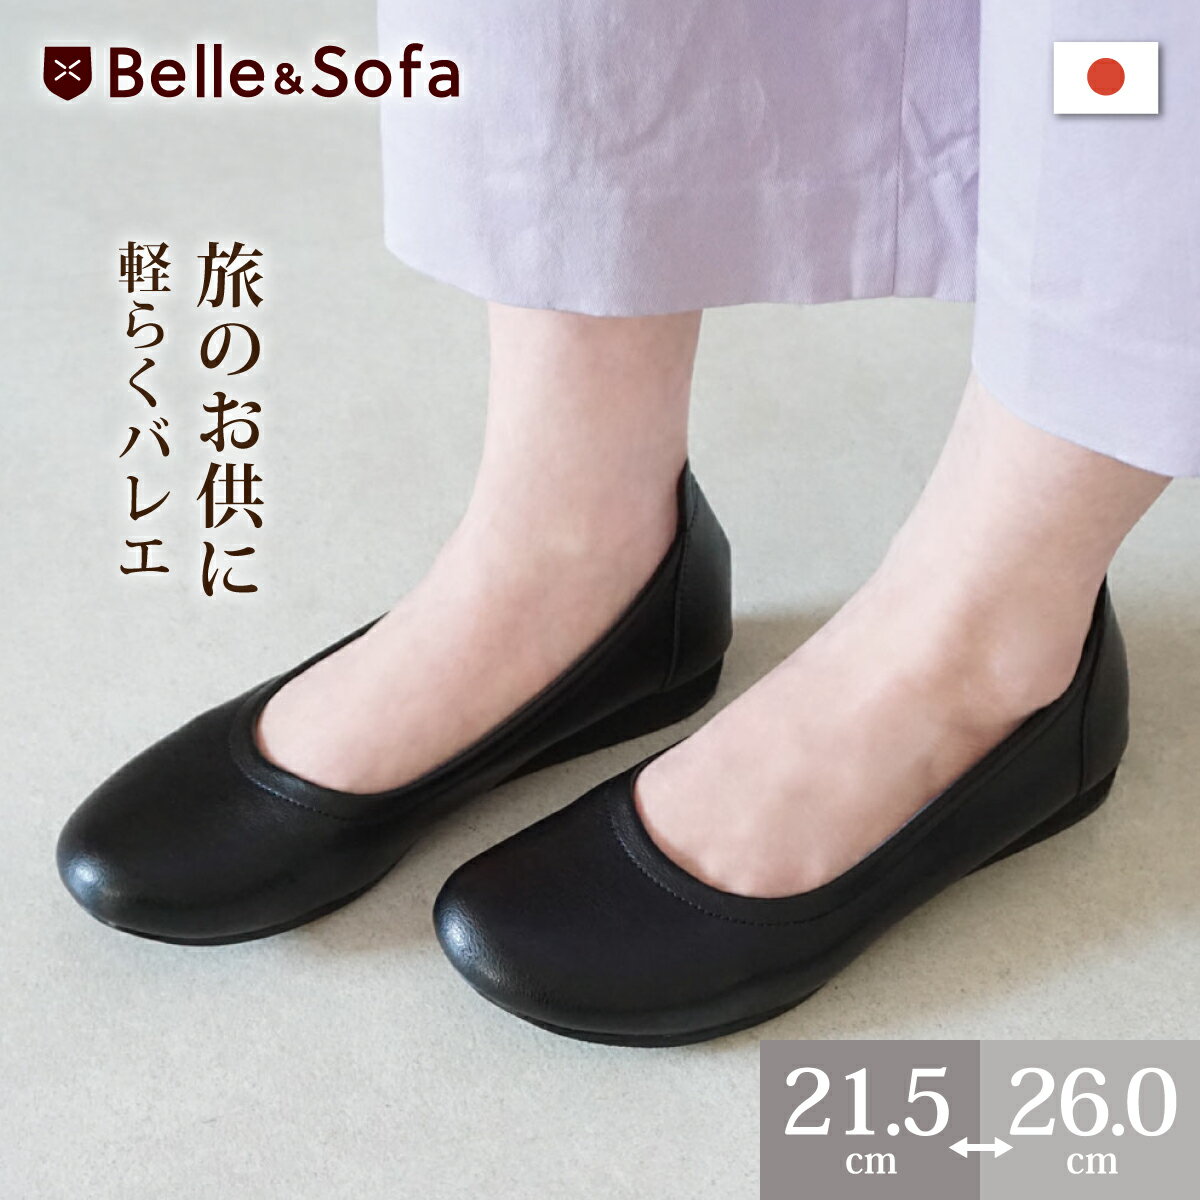 やわらかバレエシューズ フラットシューズ パンプス スリッポン 痛くない 歩きやすい 外反母趾 婦人靴 日本製 ペタル…